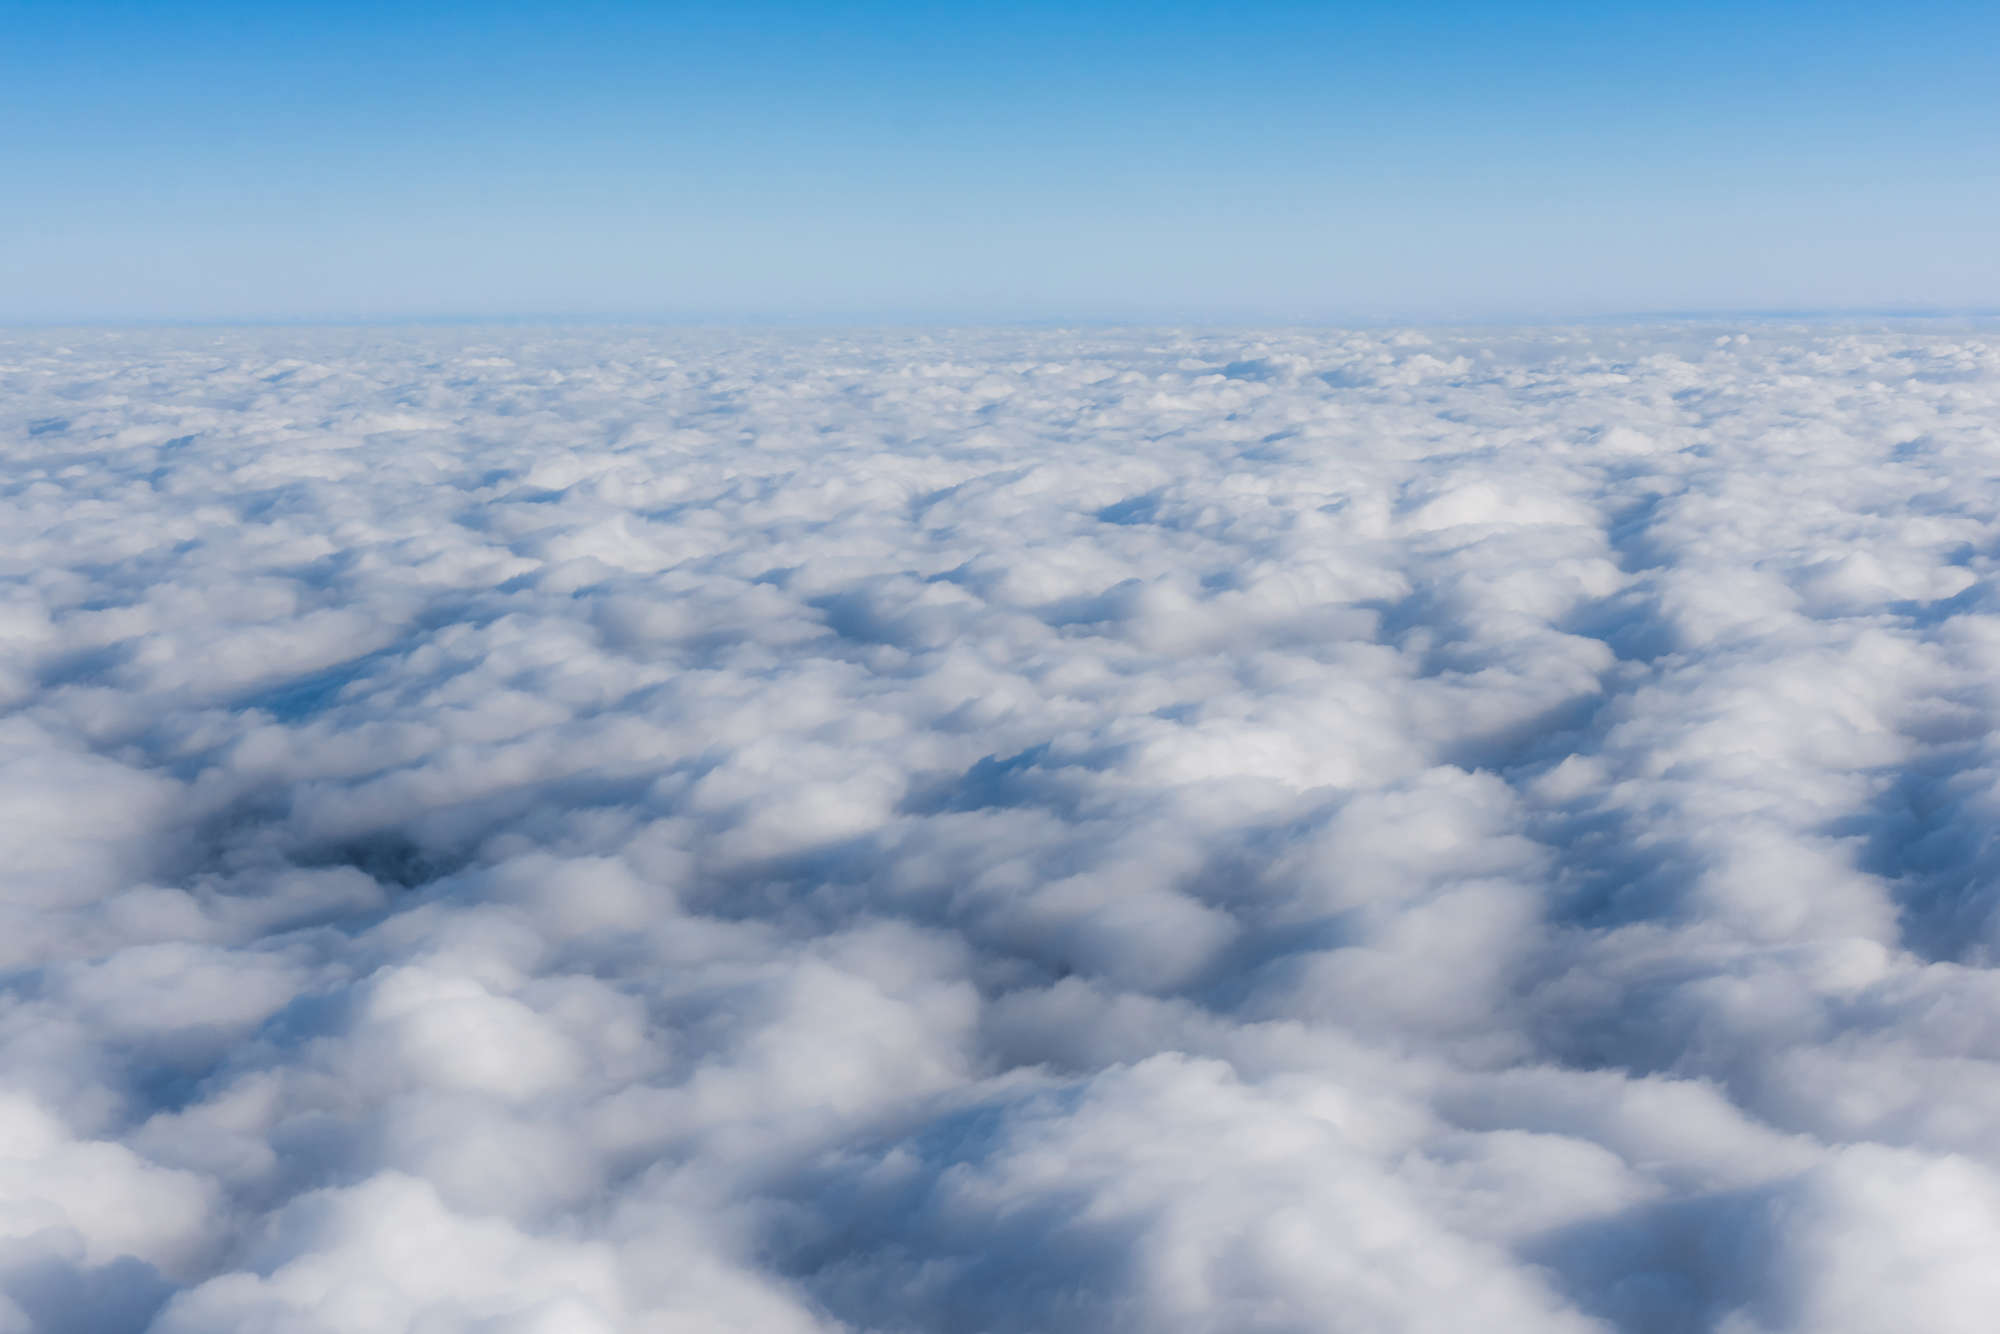             Natur Fototapete über den Wolken auf Matt Glattvlies
        